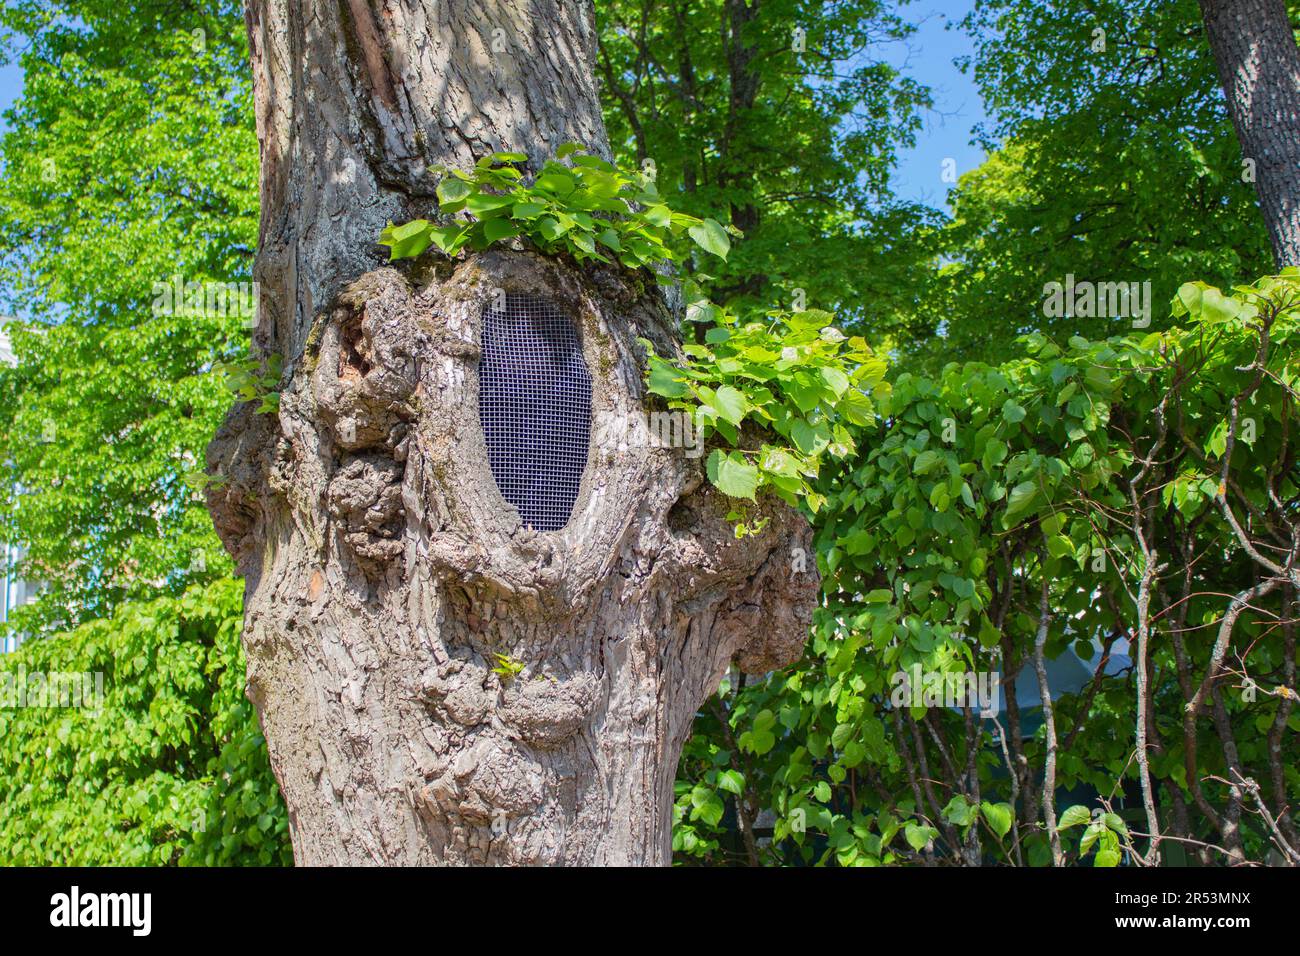 La maille métallique protège le tronc d'un vieux arbre contre les rongeurs. Traitement des vieux arbres dans le parc. Traitement et sauvetage des arbres creux. Banque D'Images